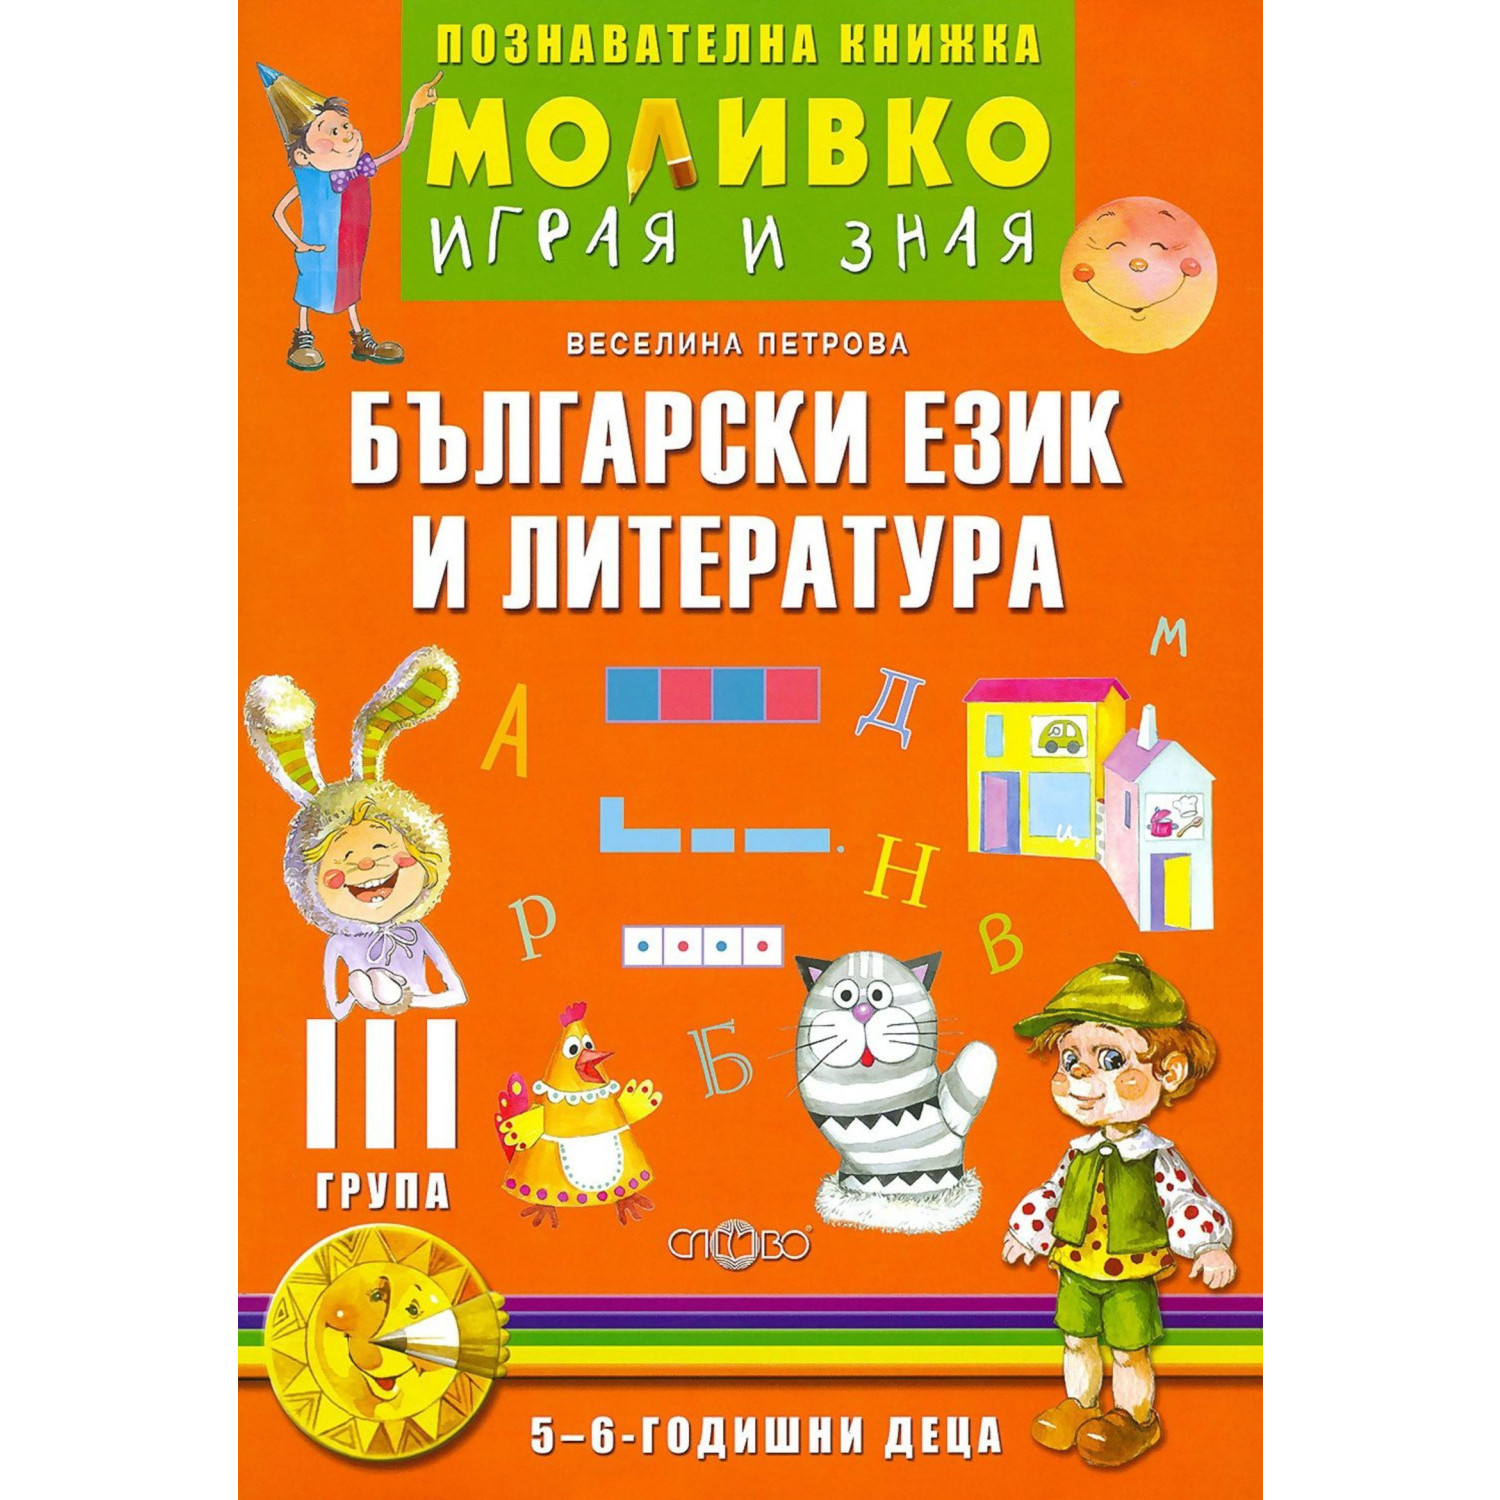 Моливко - Играя и зная Български език и литература 5-6  г.